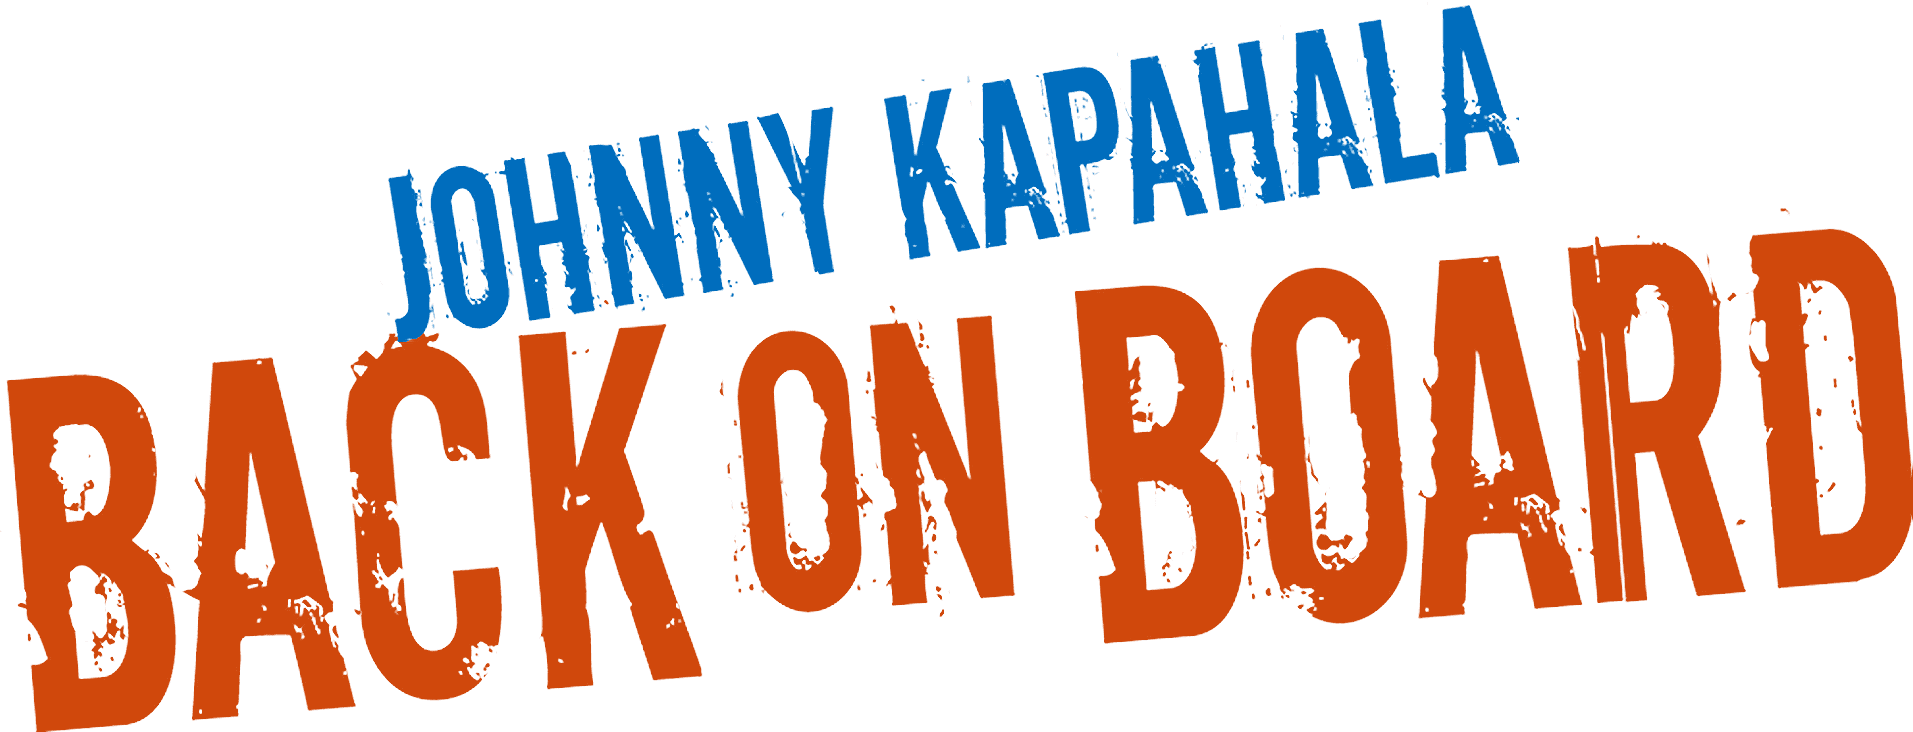 Johnny Kapahala: Back on Board logo